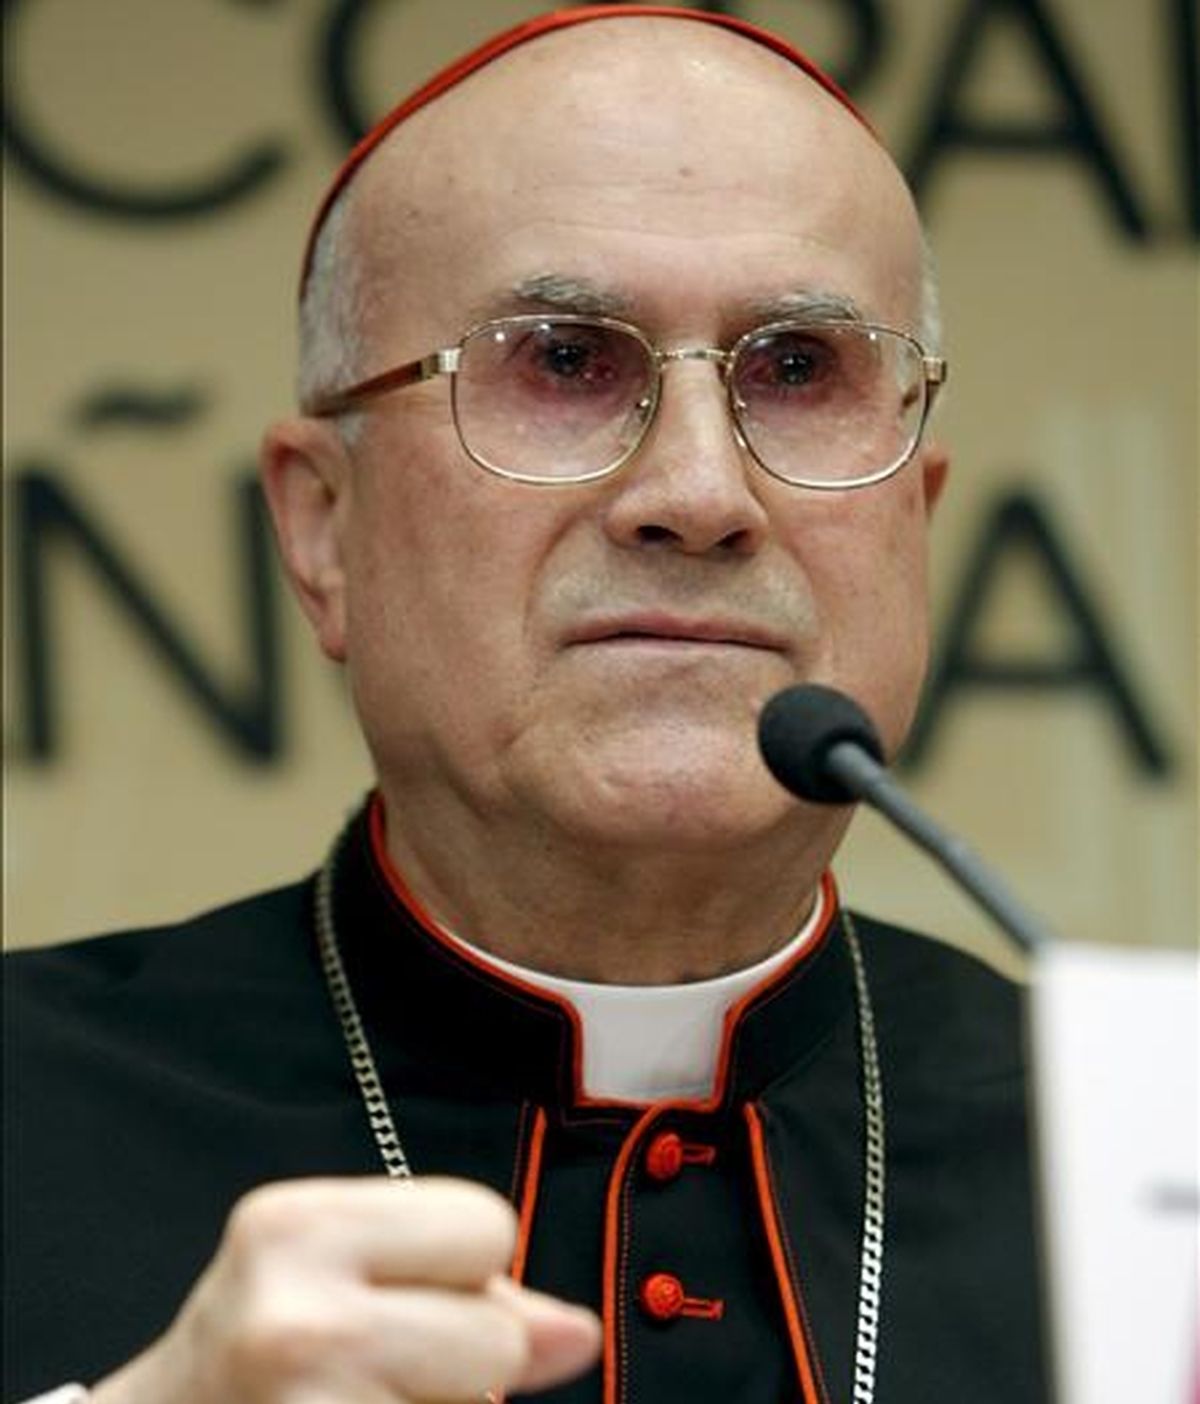 El secretario de Estado del Vaticano, el cardenal Tarcisio Bertone, insistió además en que la Iglesia Católica nunca ha ordenado ocultar los casos de abusos o frenar las investigaciones. EFE/Archivo